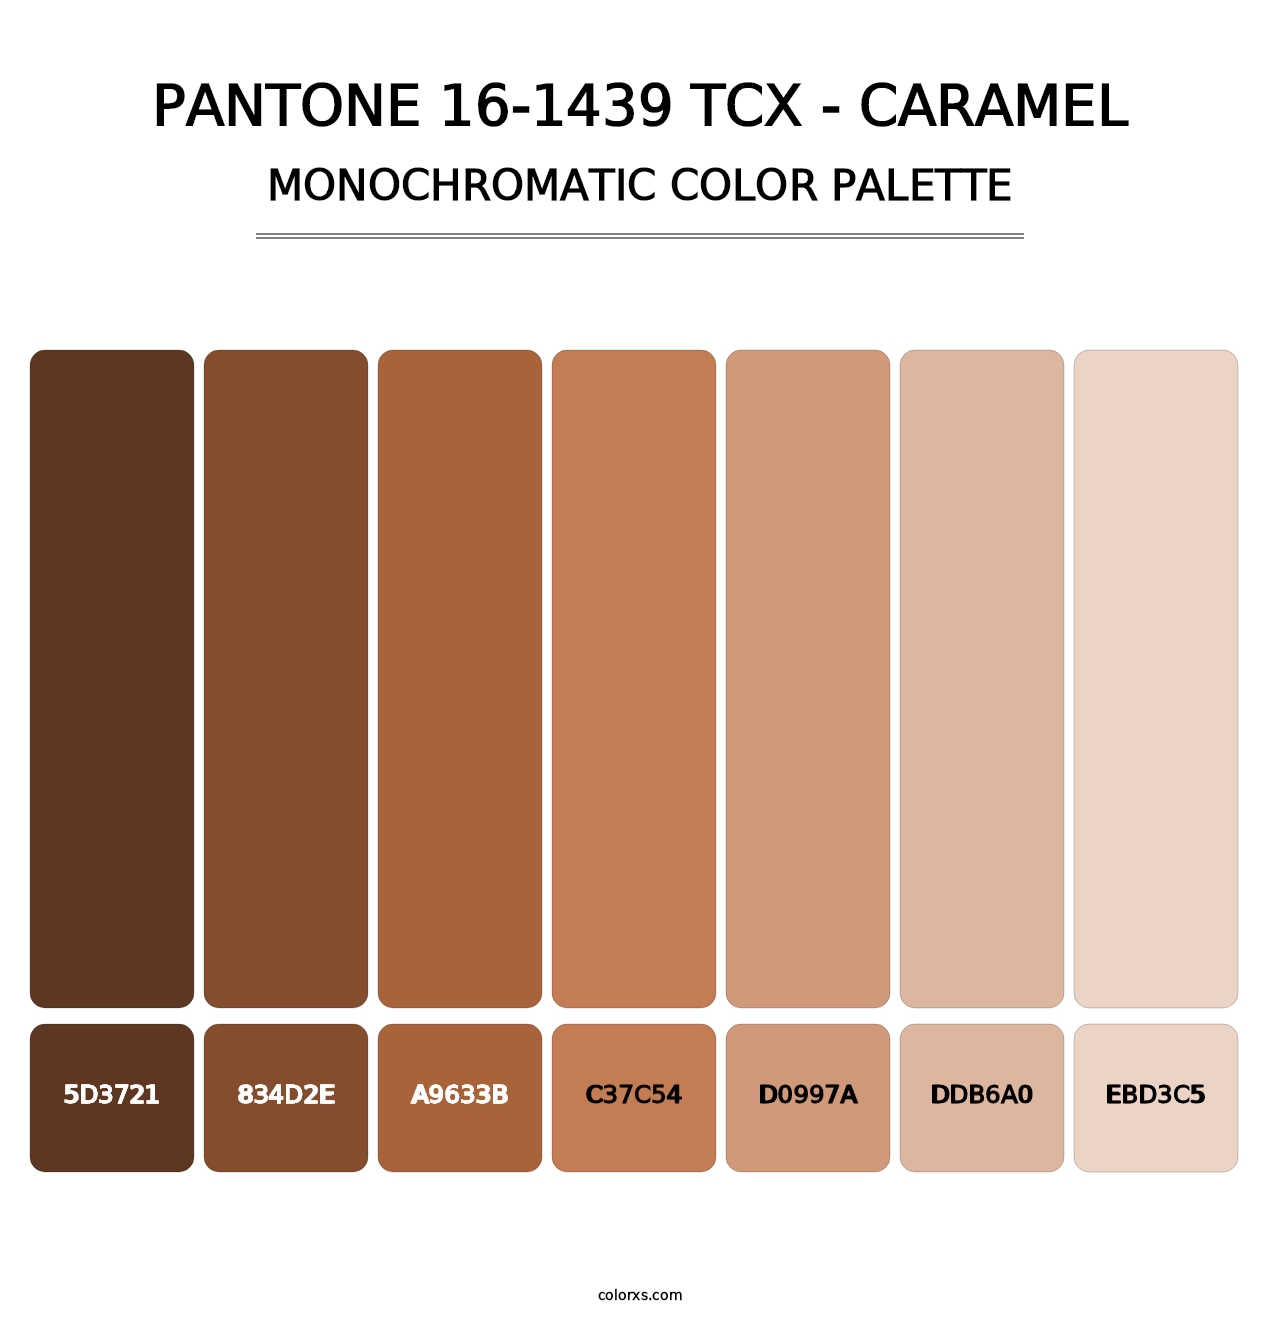 PANTONE 16-1439 TCX - Caramel - Monochromatic Color Palette